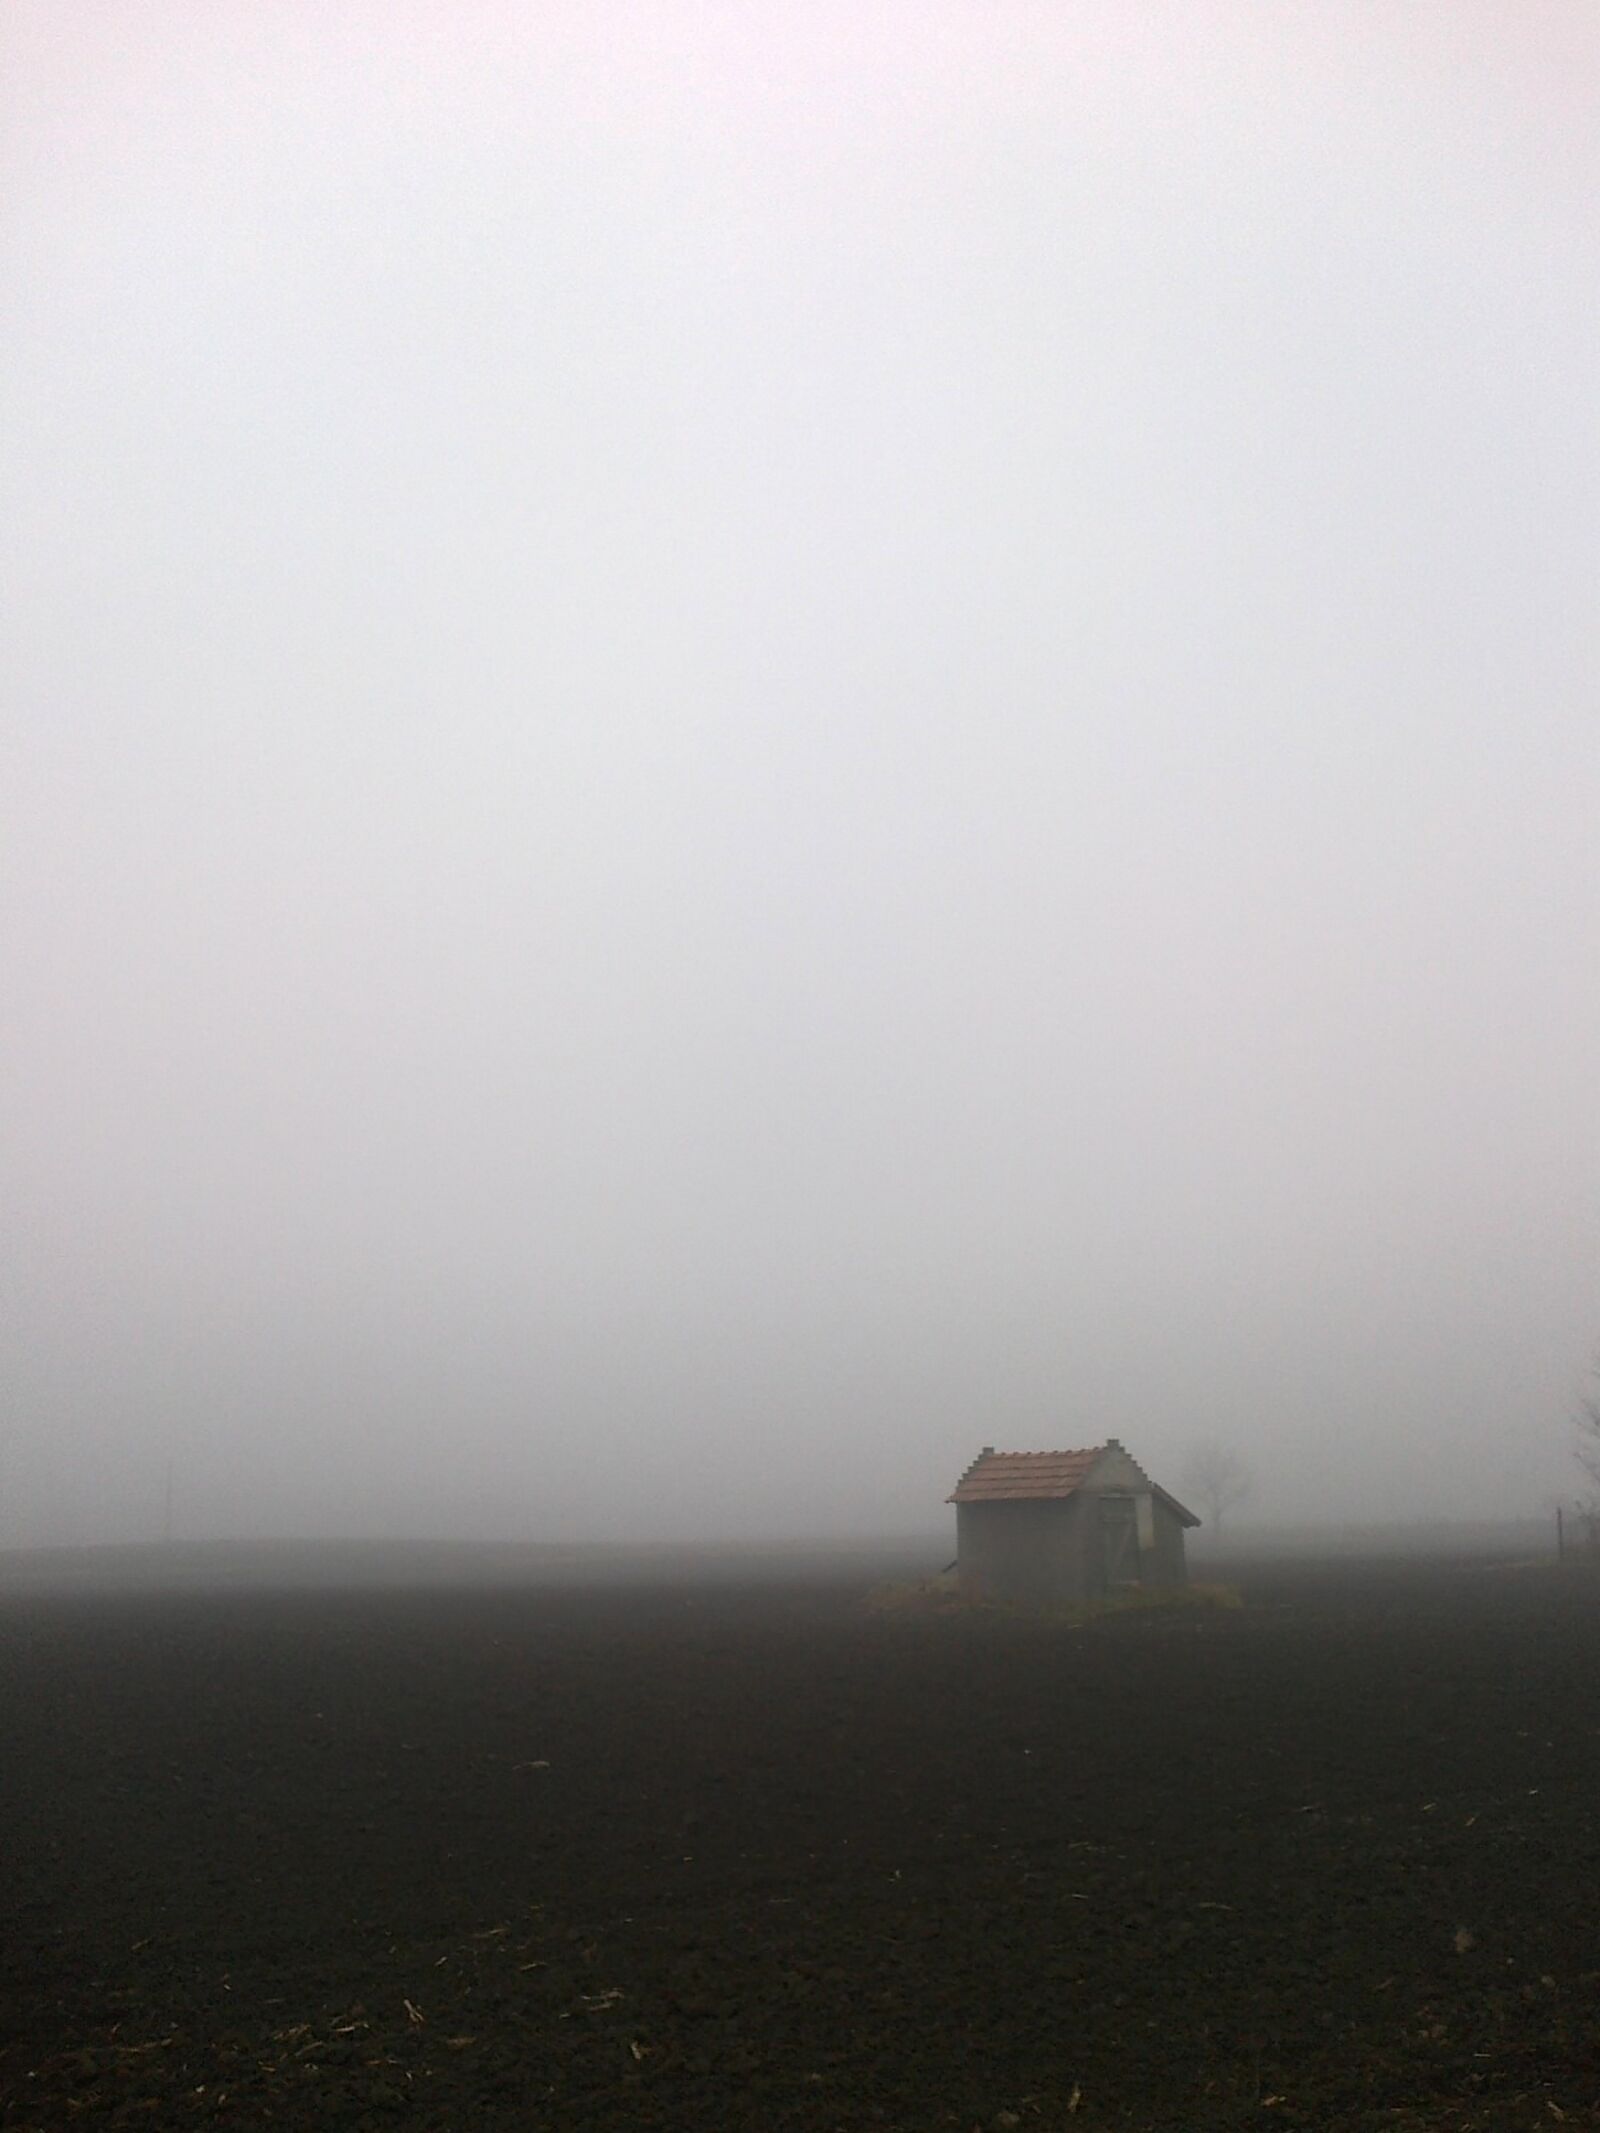 Nokia 500 sample photo. Cottage, fog, arable land photography